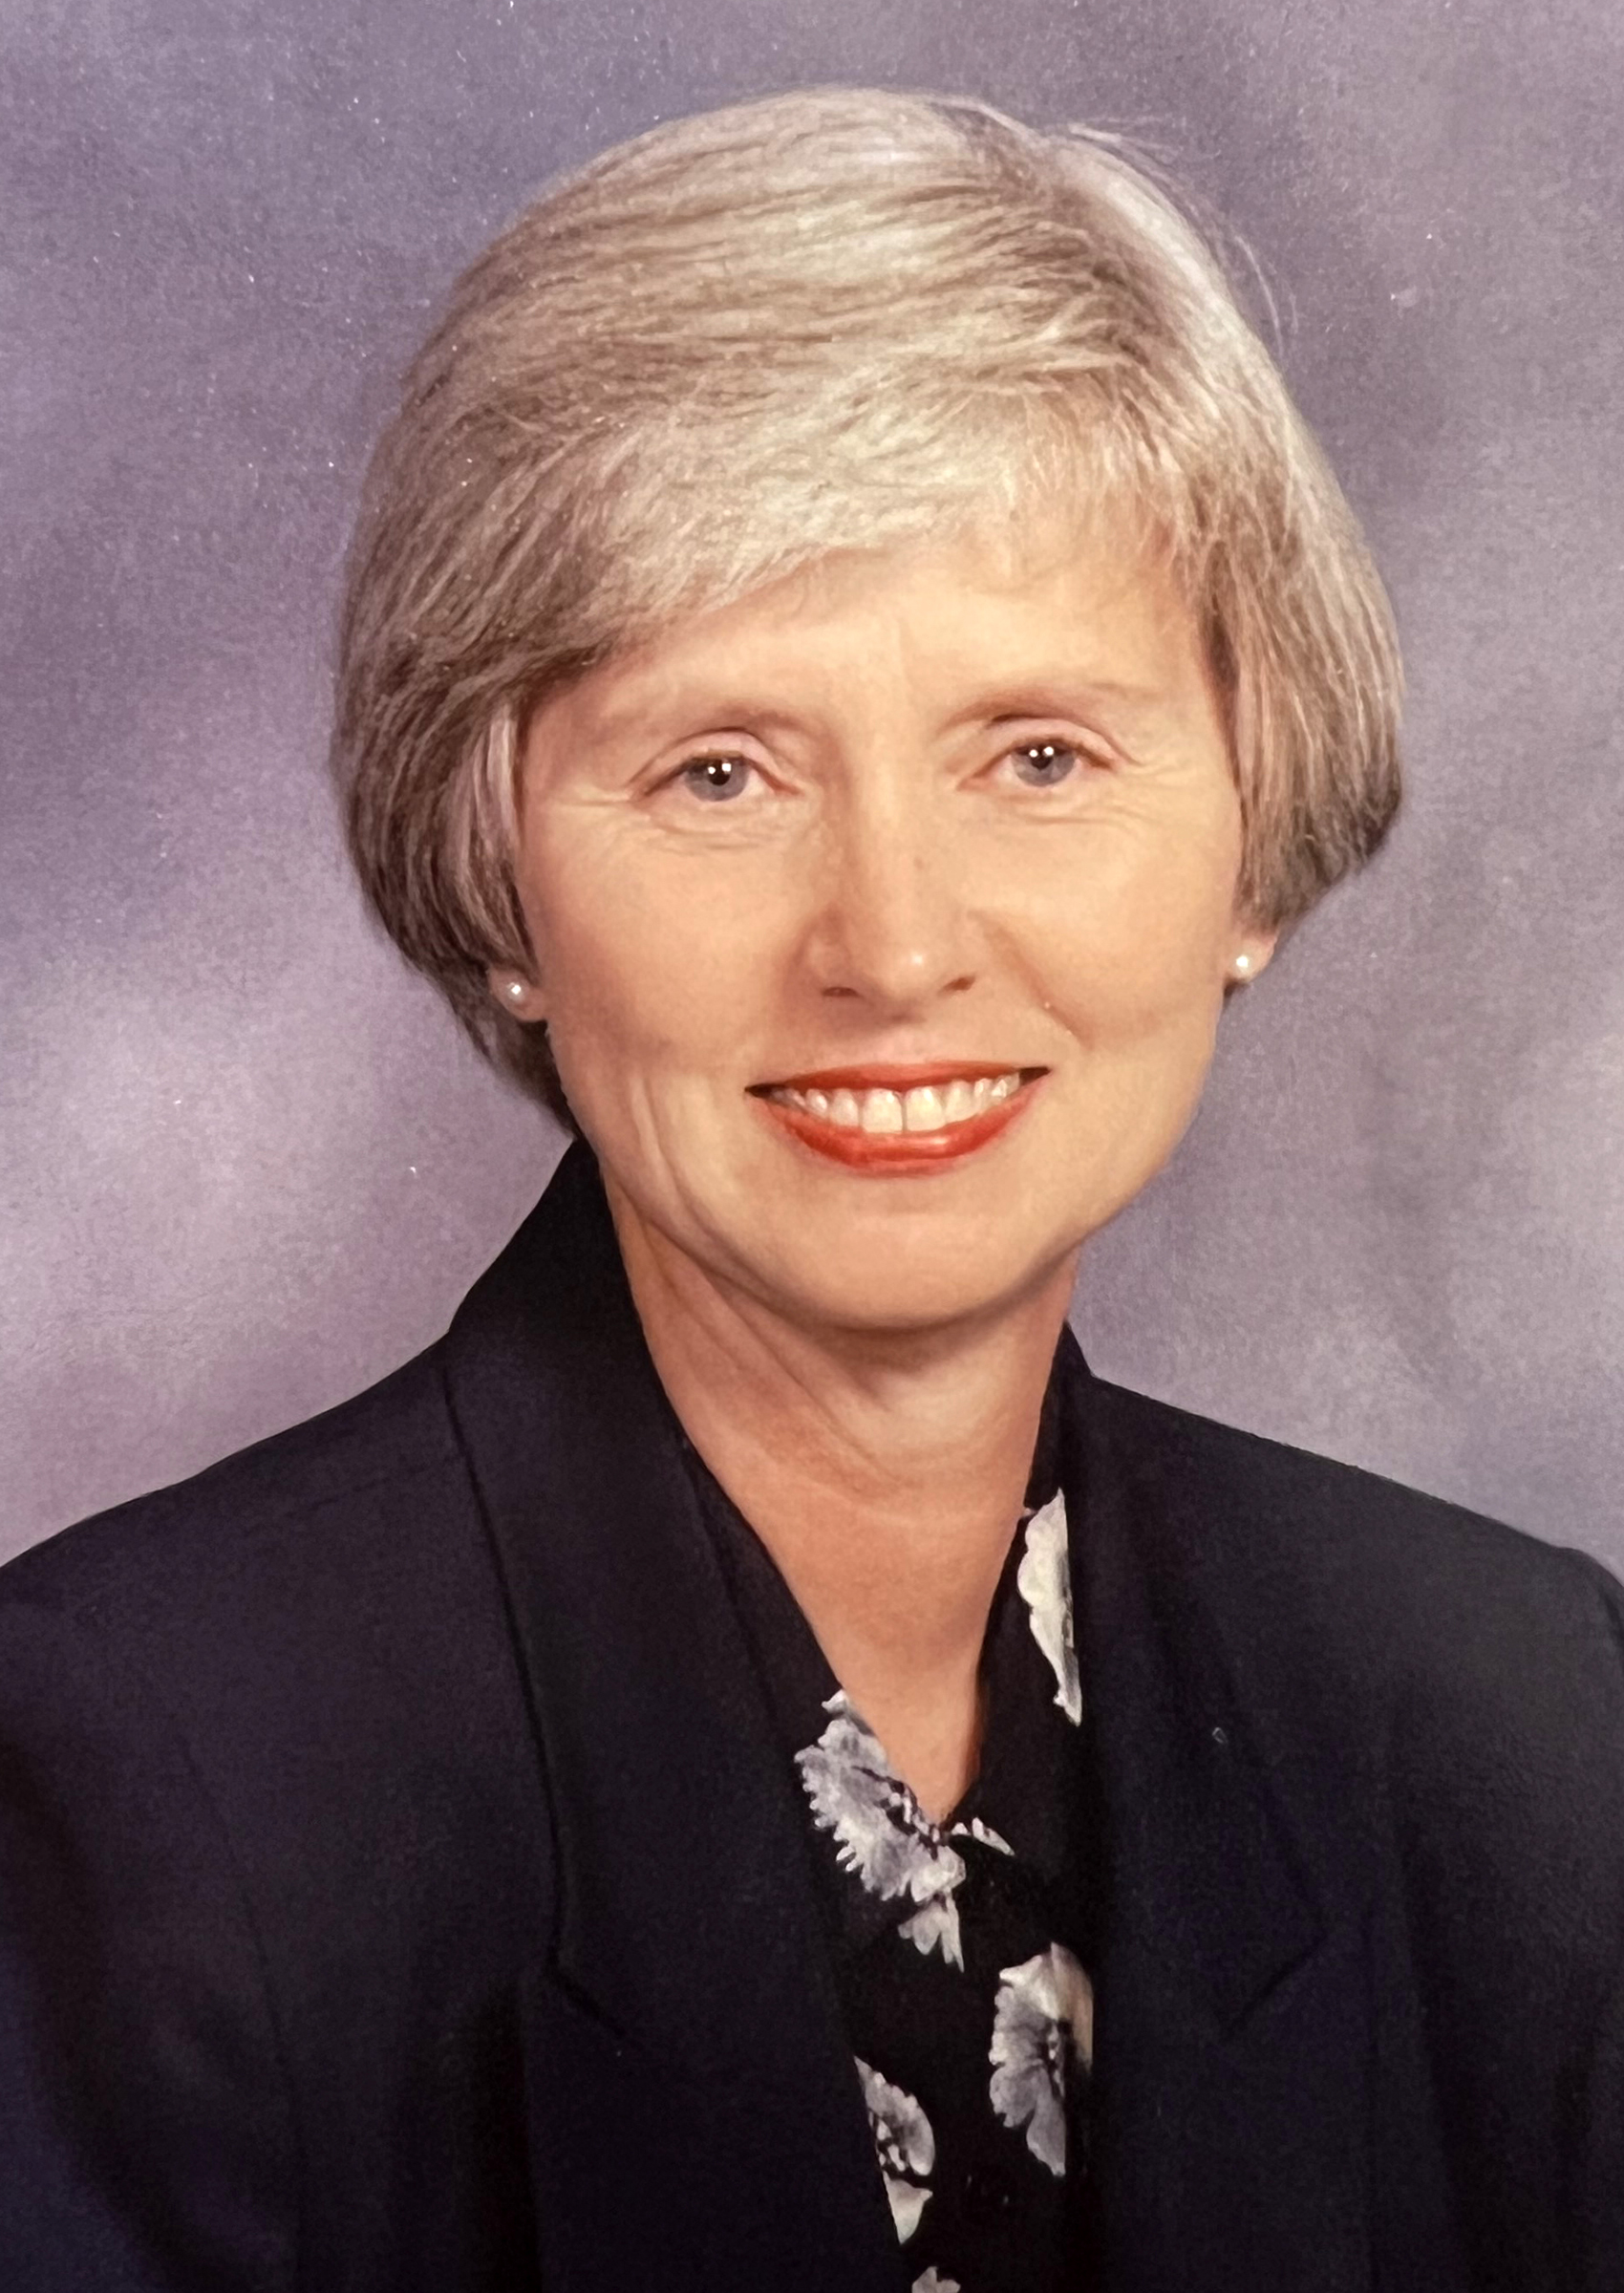 Board member Sue Updegraff